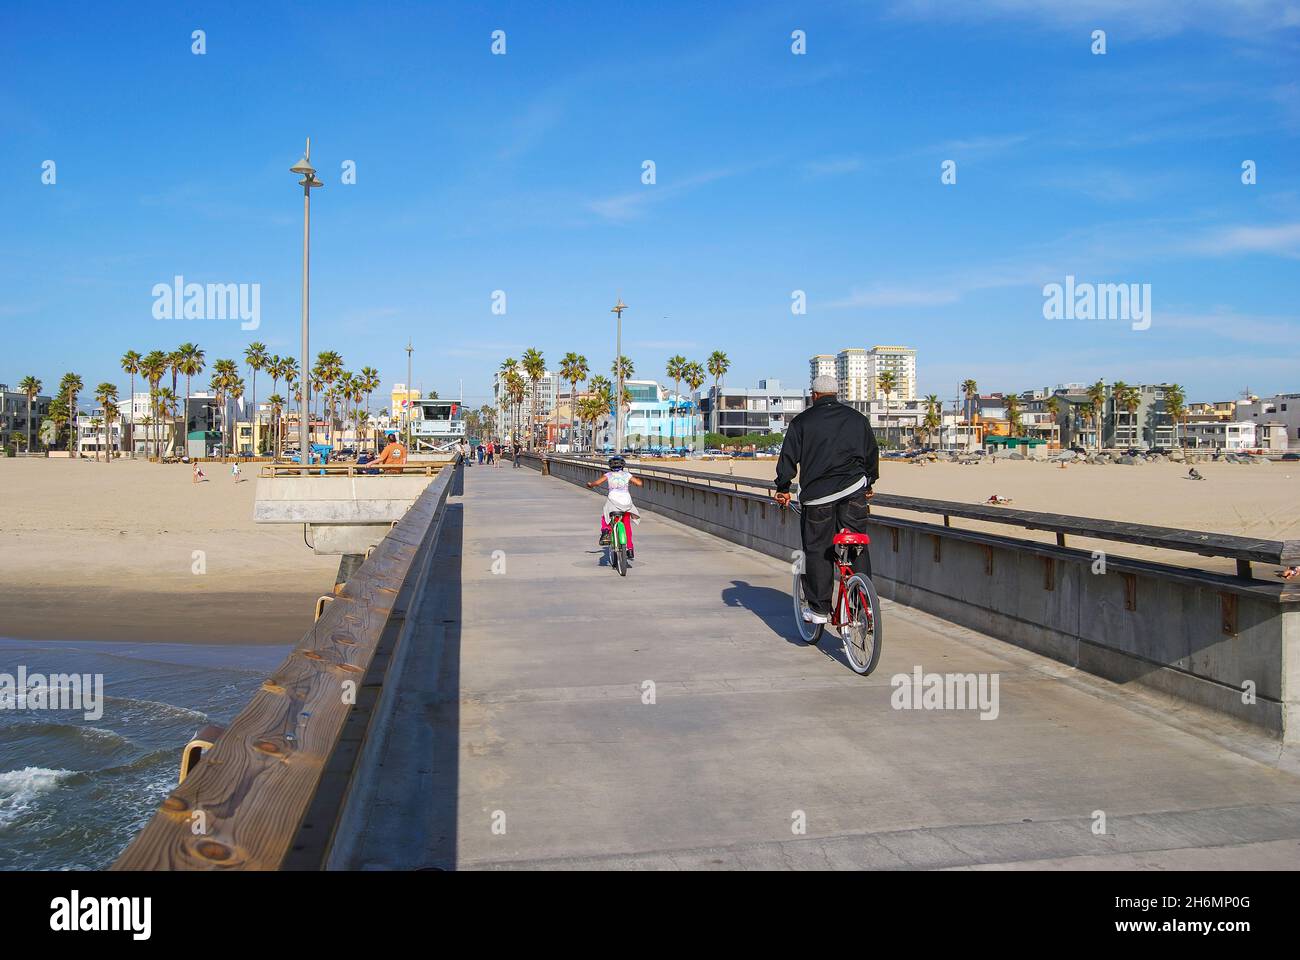 Jetée de Venice, Venice Beach, Los Angeles, Californie, États-Unis d'Amérique Banque D'Images